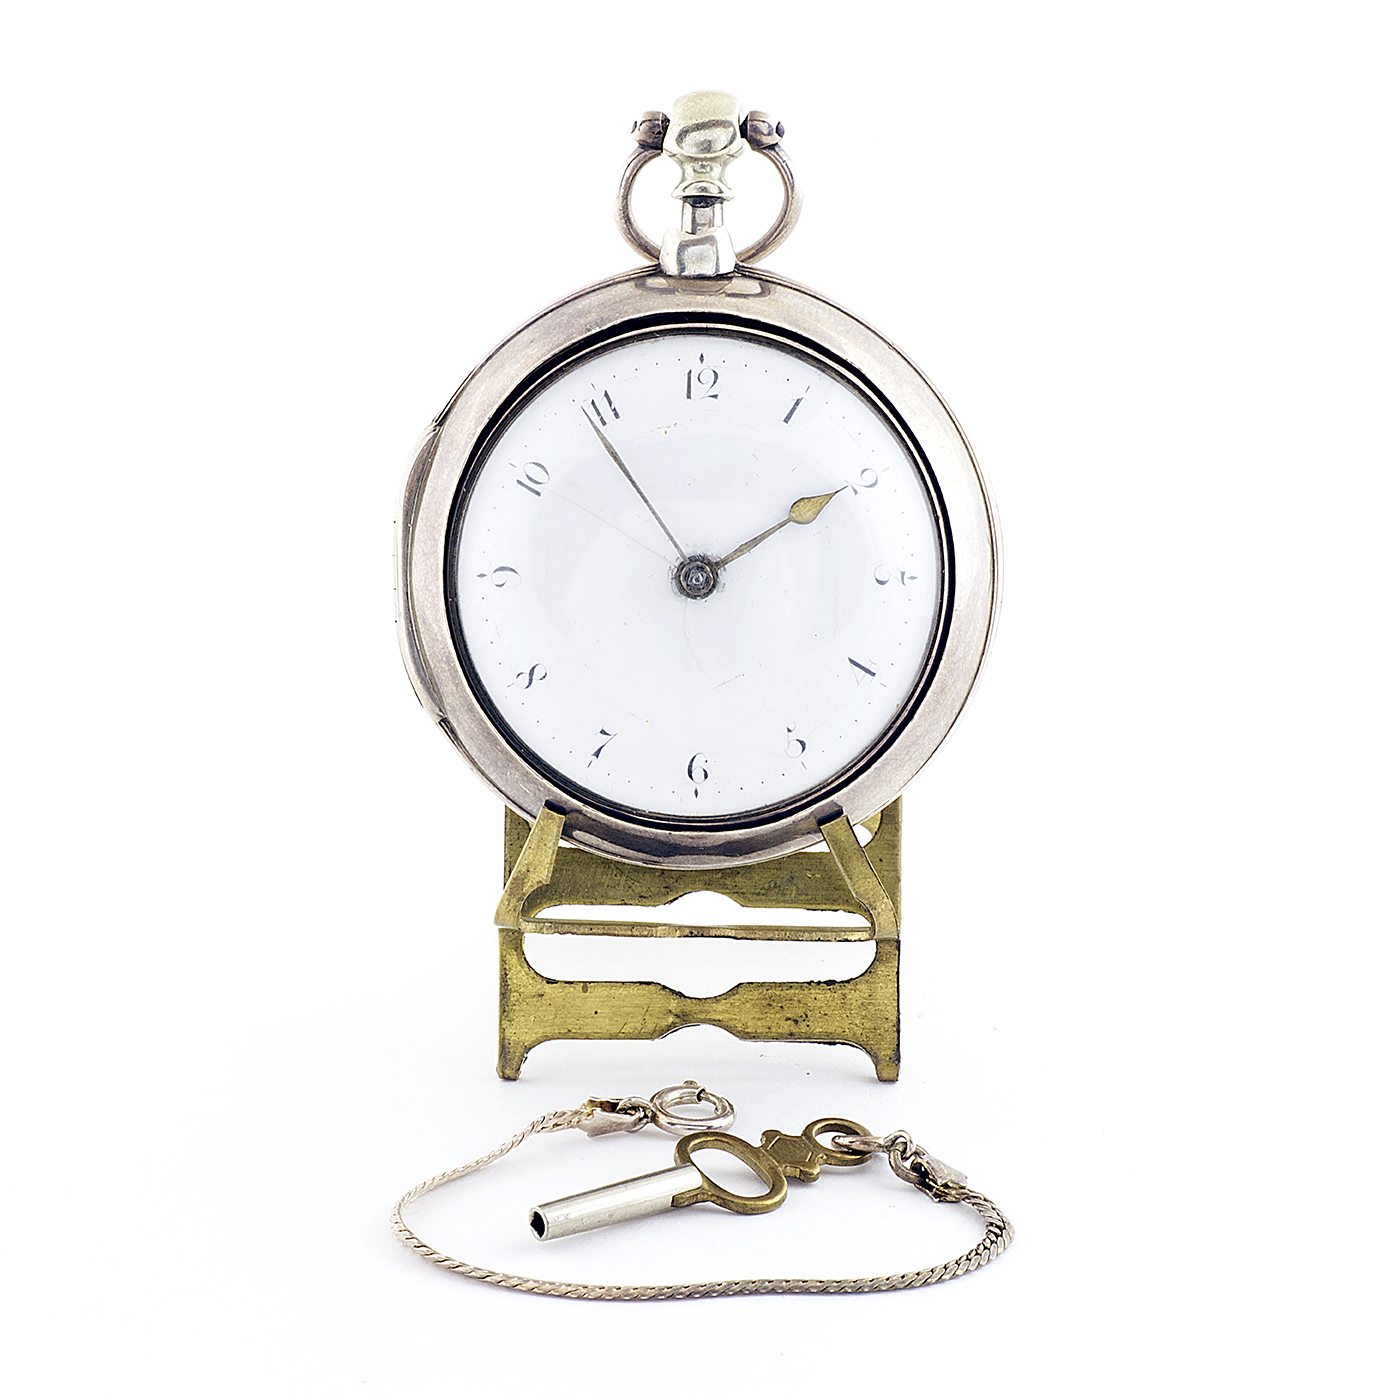 F. LIVINGTON (Londres, 1799). Reloj de Bolsillo Lepine, Verge Fusee (Catalino).